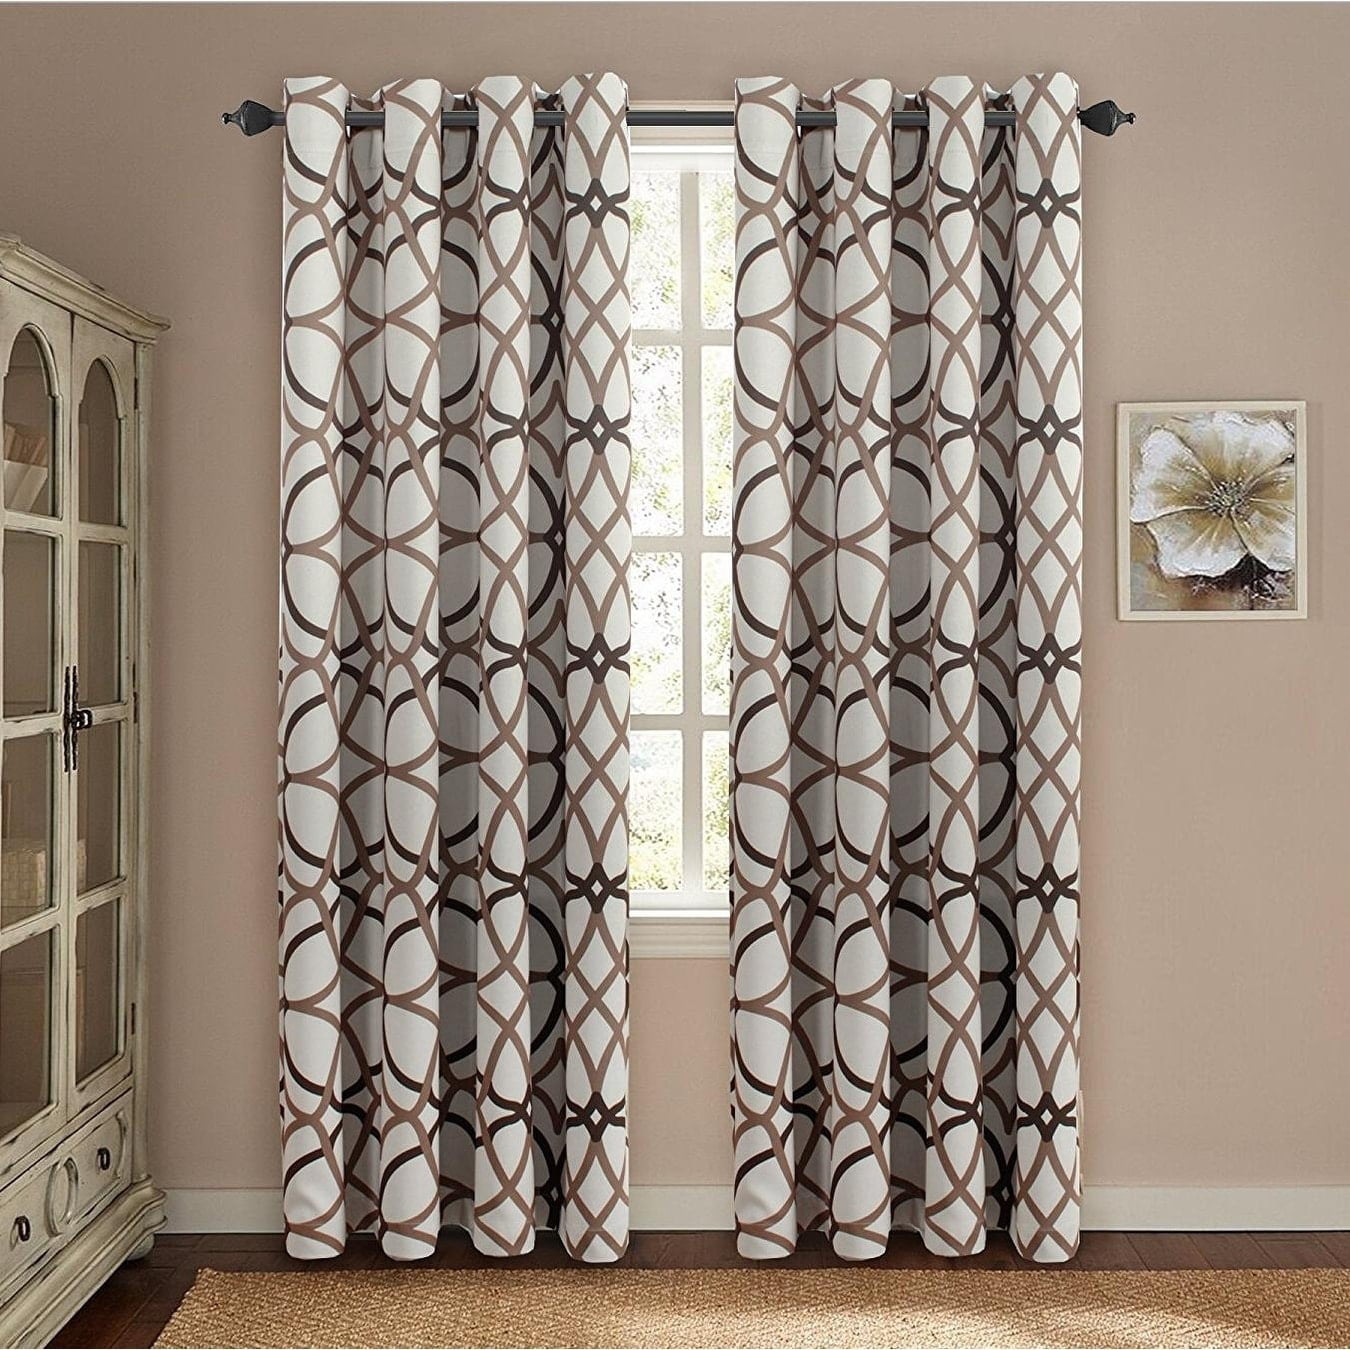 Premier Home Decor Inc PrimeBeau Geometric Pattern Blackout Curtain Pair 2 Pack  Walmart com  